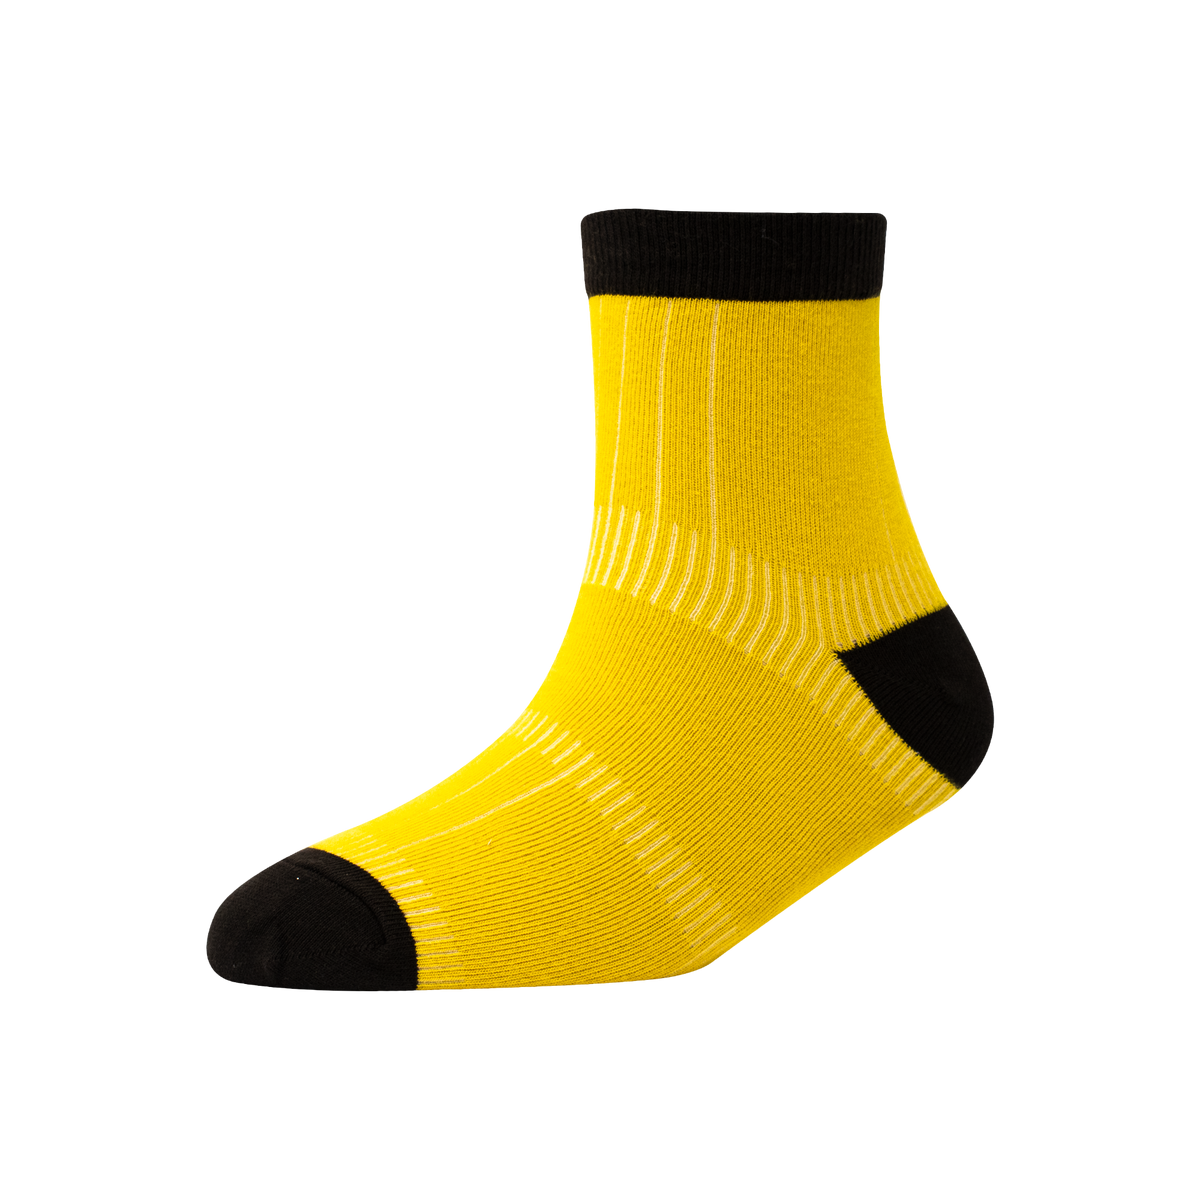 Men's YW-M1-244 Heal & Toe Misloop Ankle Socks